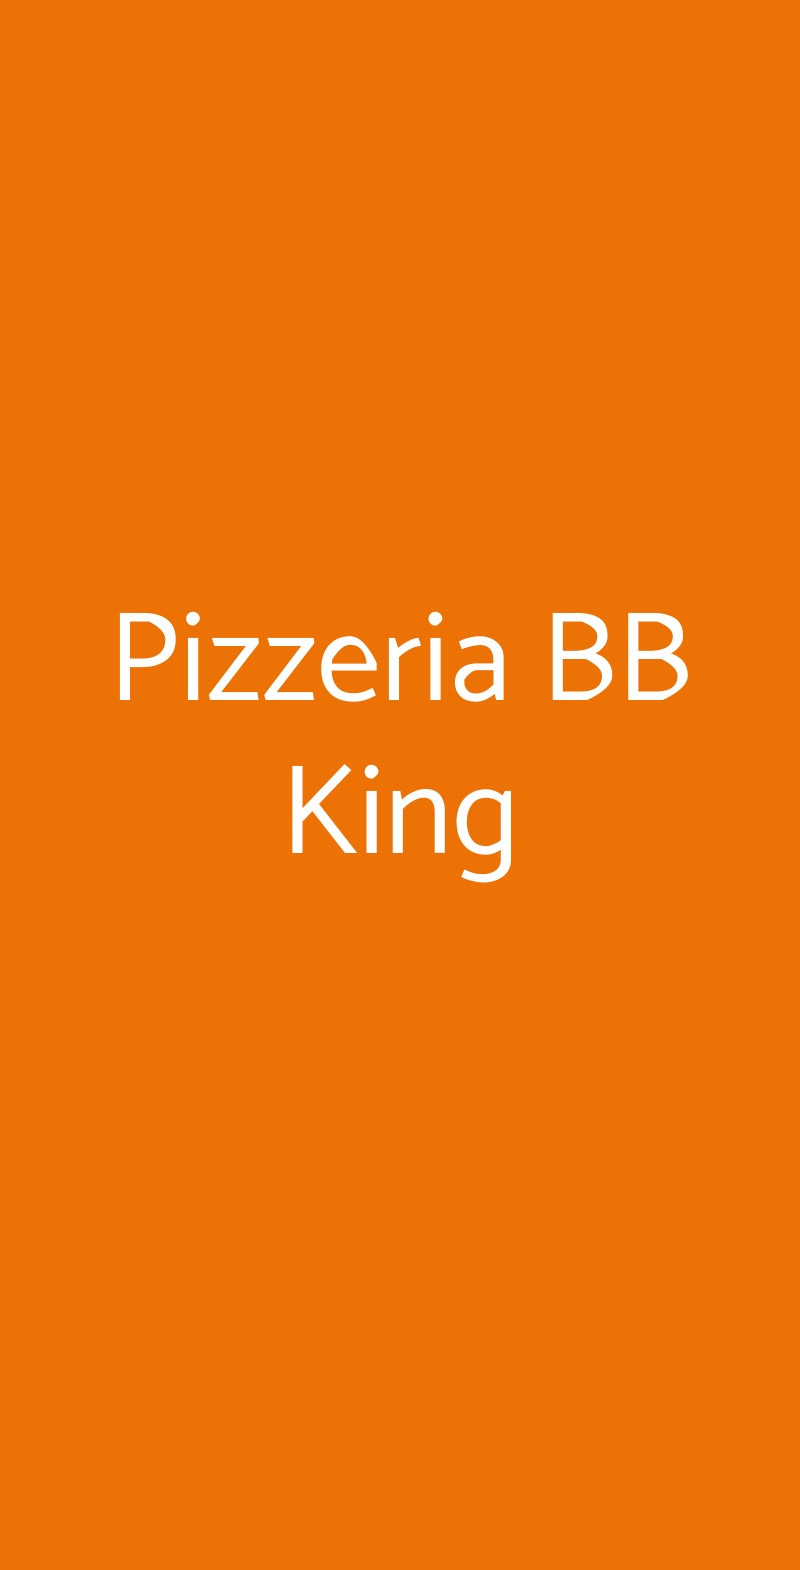 Pizzeria BB King Bologna menù 1 pagina